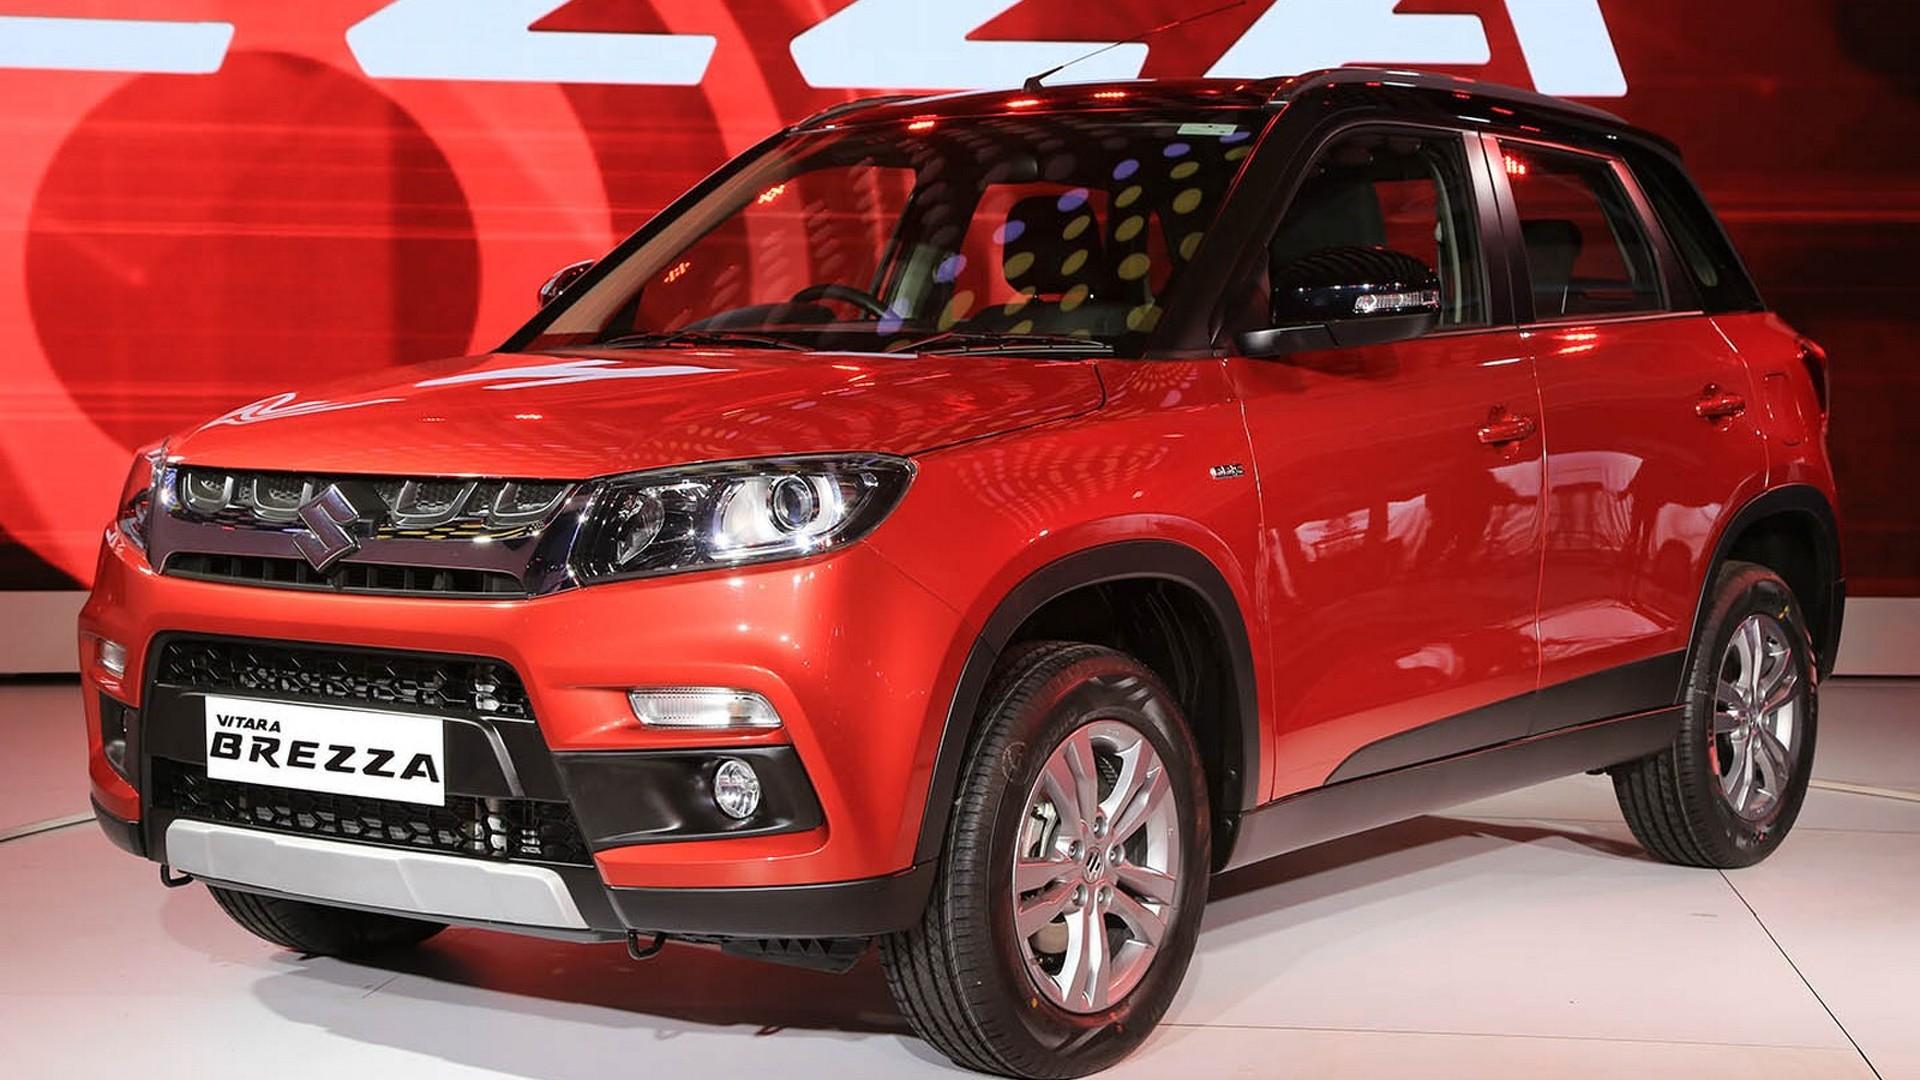 Suzuki Vitara Brezza unveiled at Delhi Auto Expo